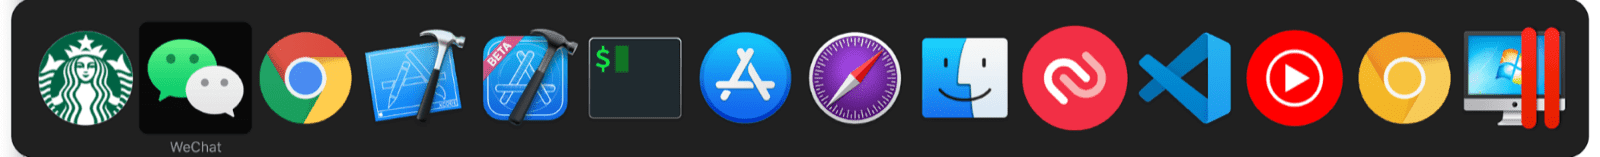 Przełącznik wielozadaniowy w systemie macOS obejmuje miniaplikacje oraz zwykłą aplikację w systemie macOS.